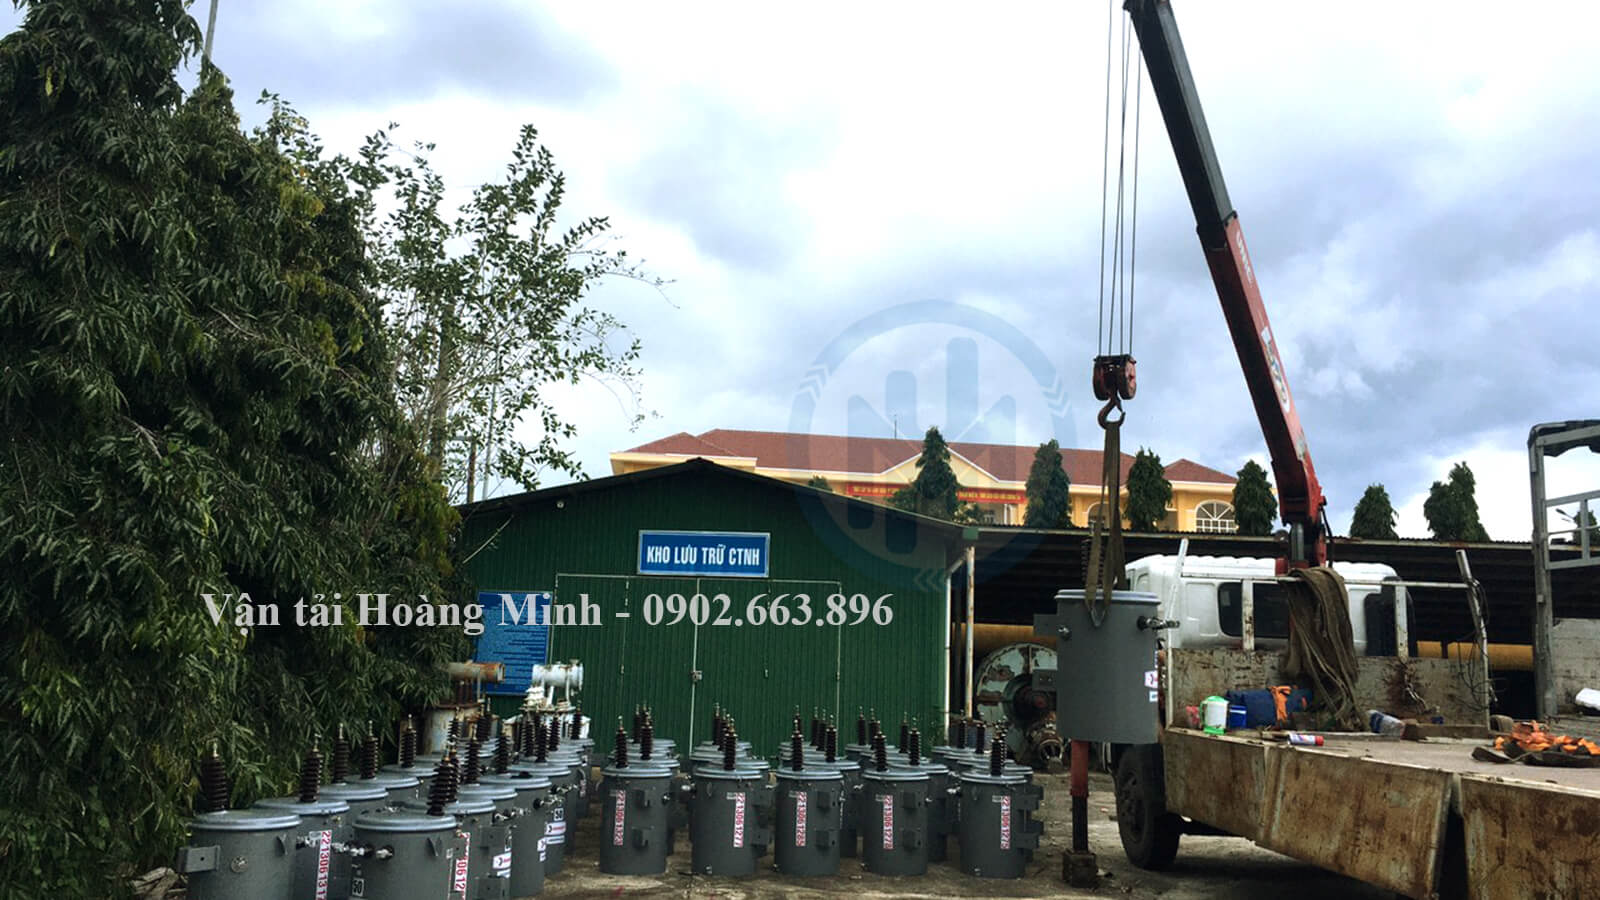 Nhân viên Hoàng Minh sử dụng xe cẩu di dời các thùng hàng tại kho xưởng.jpg